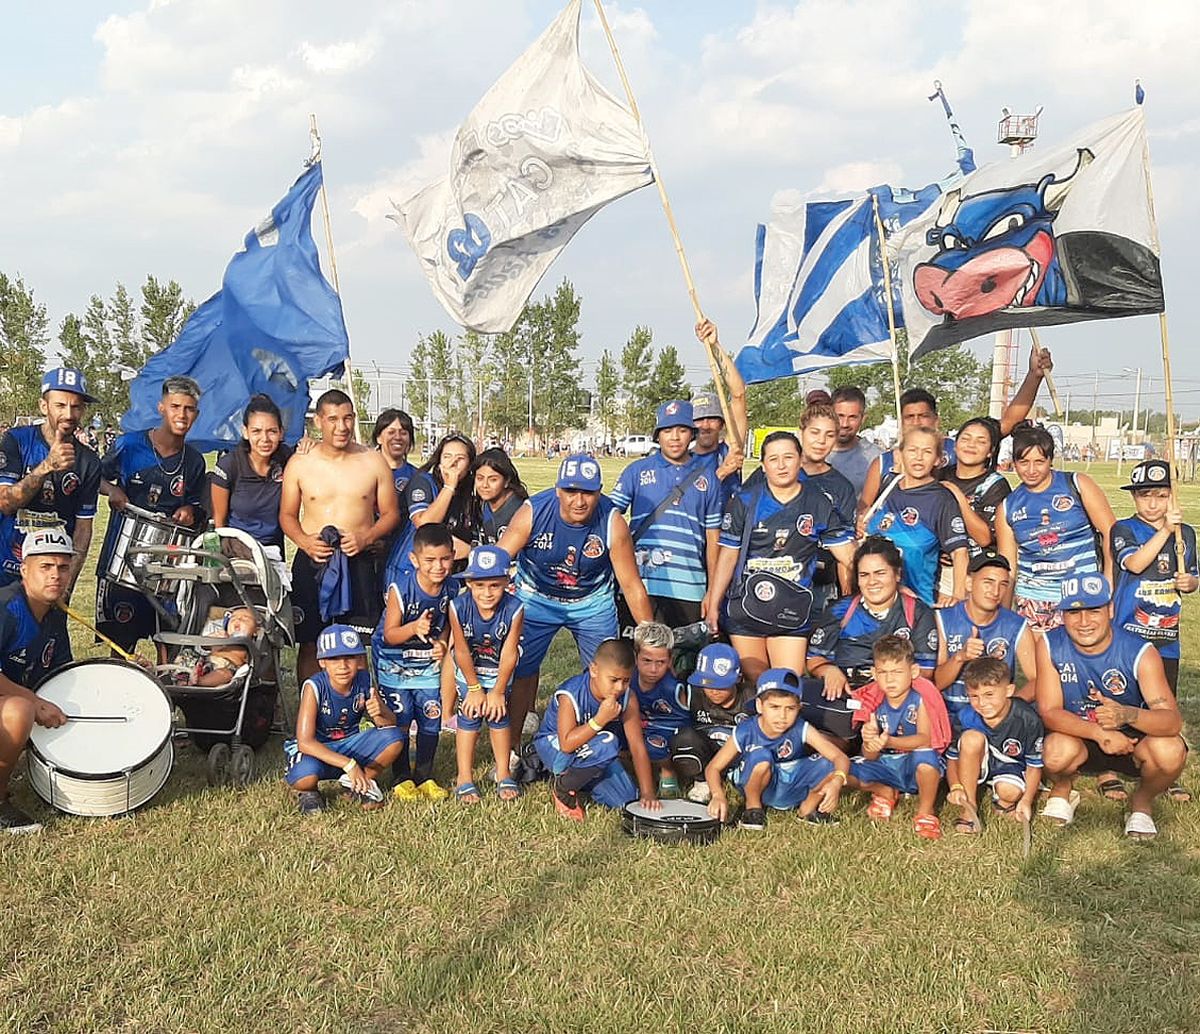 La pasión del fútbol invade la ciudad. Empieza la fiesta de la Copa Villa María.